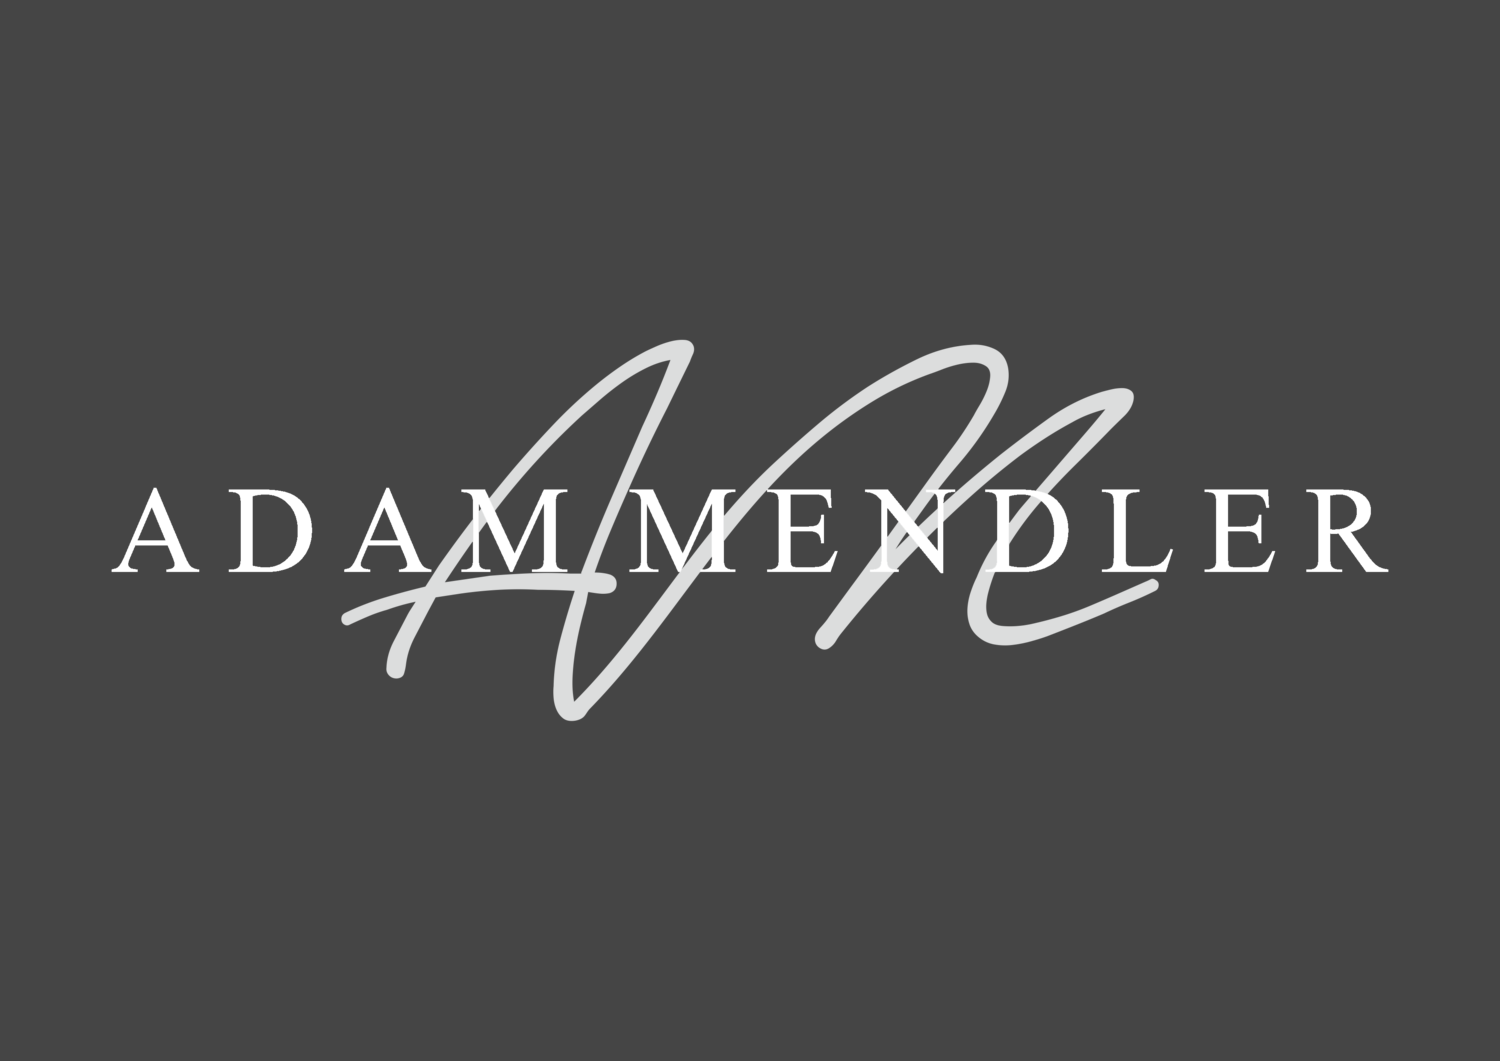 Adam Mendler Logo